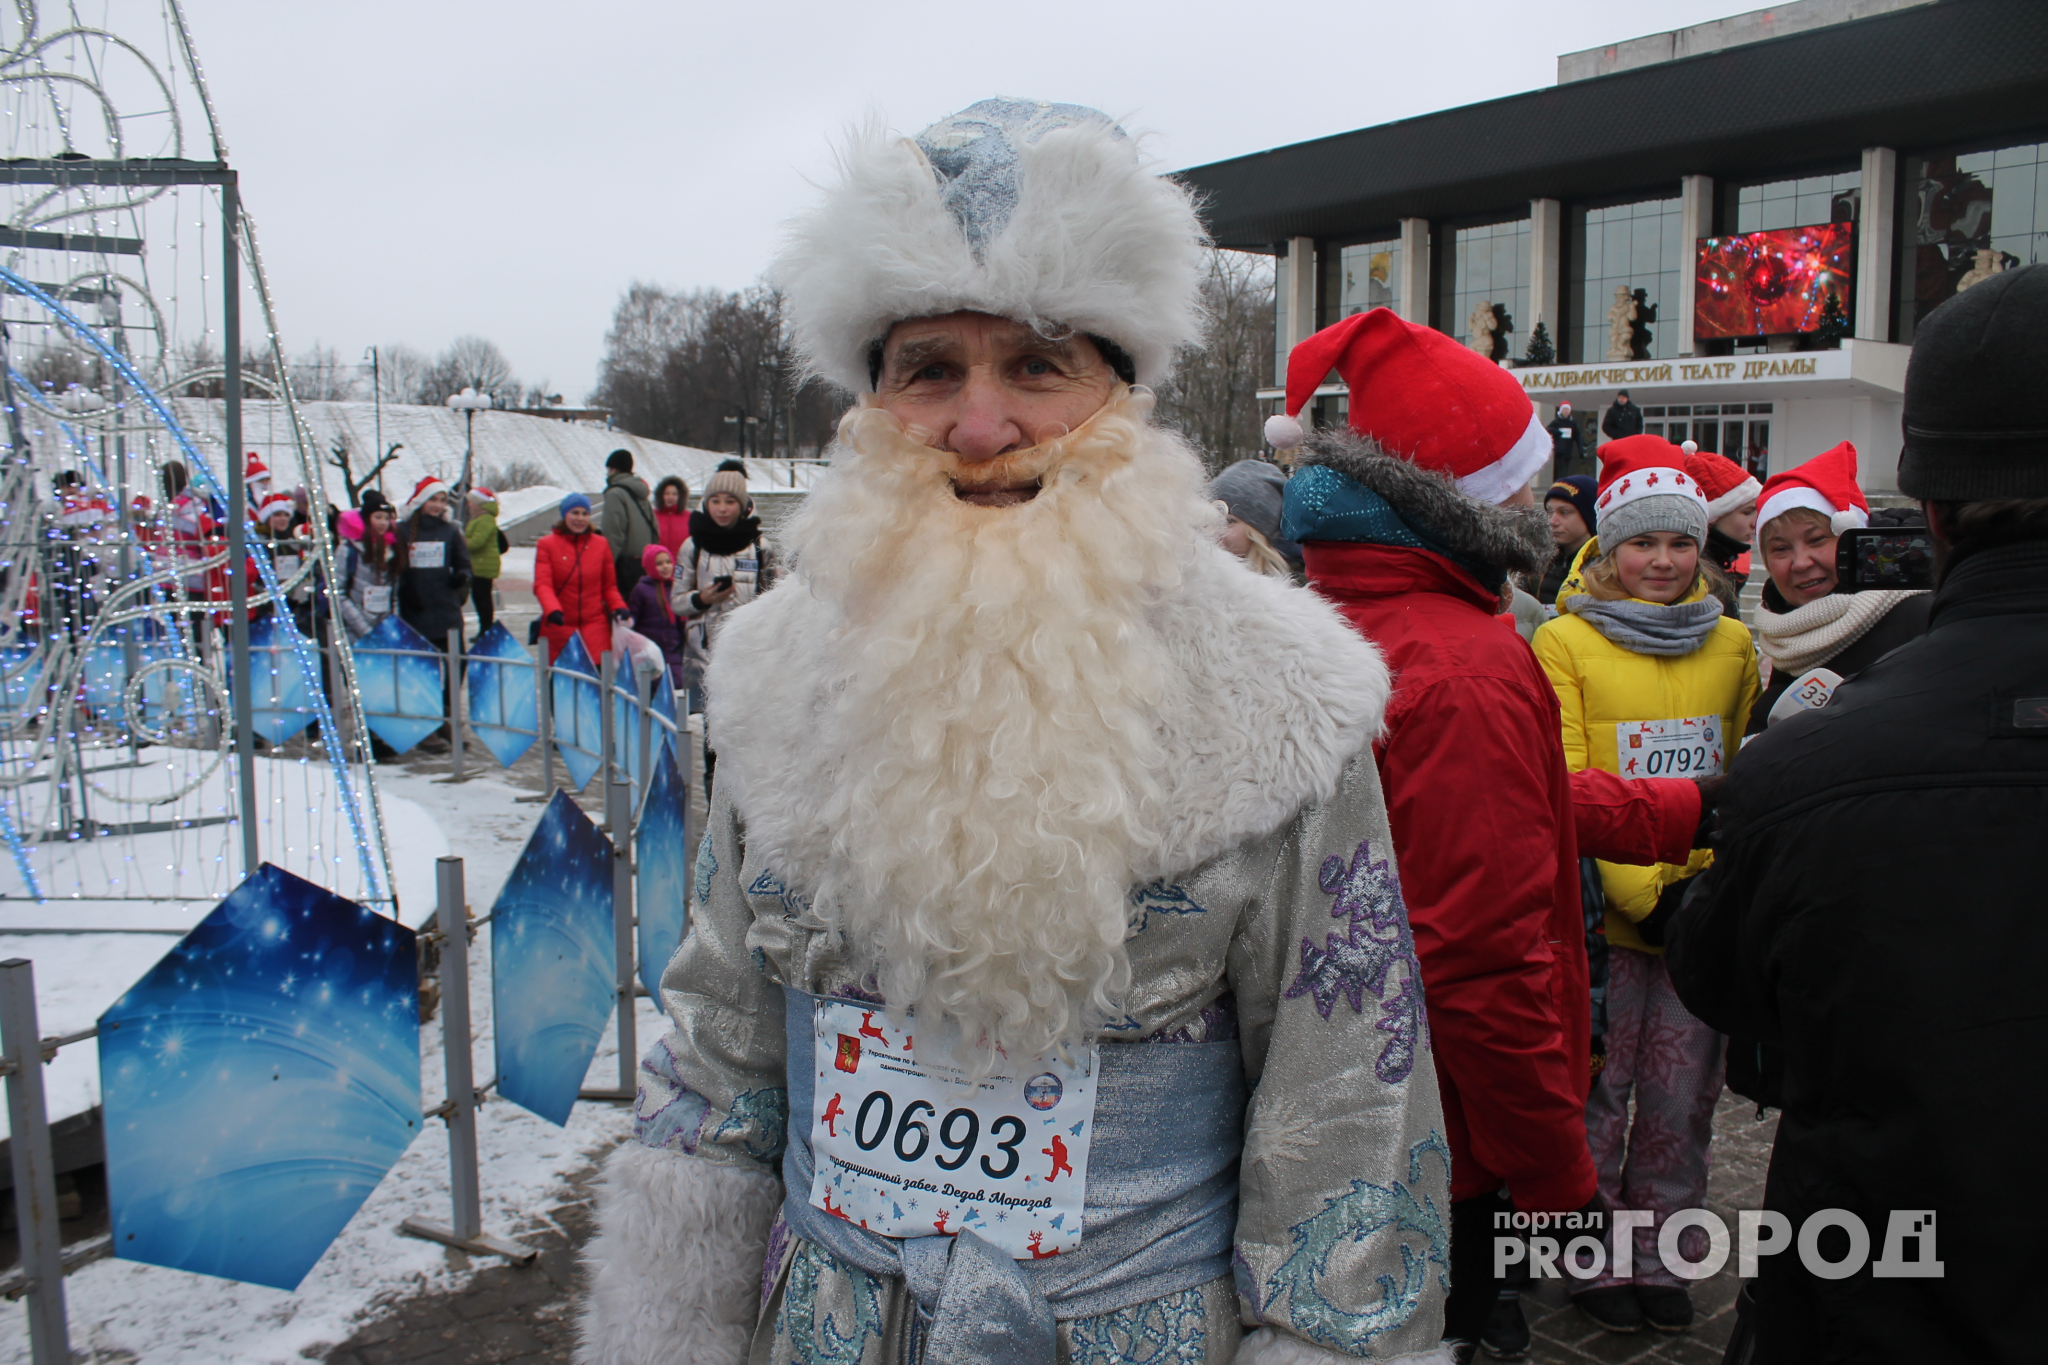 Самый старый участник забега Дедов Морозов: "Бежал седьмой раз и еще побегу!"